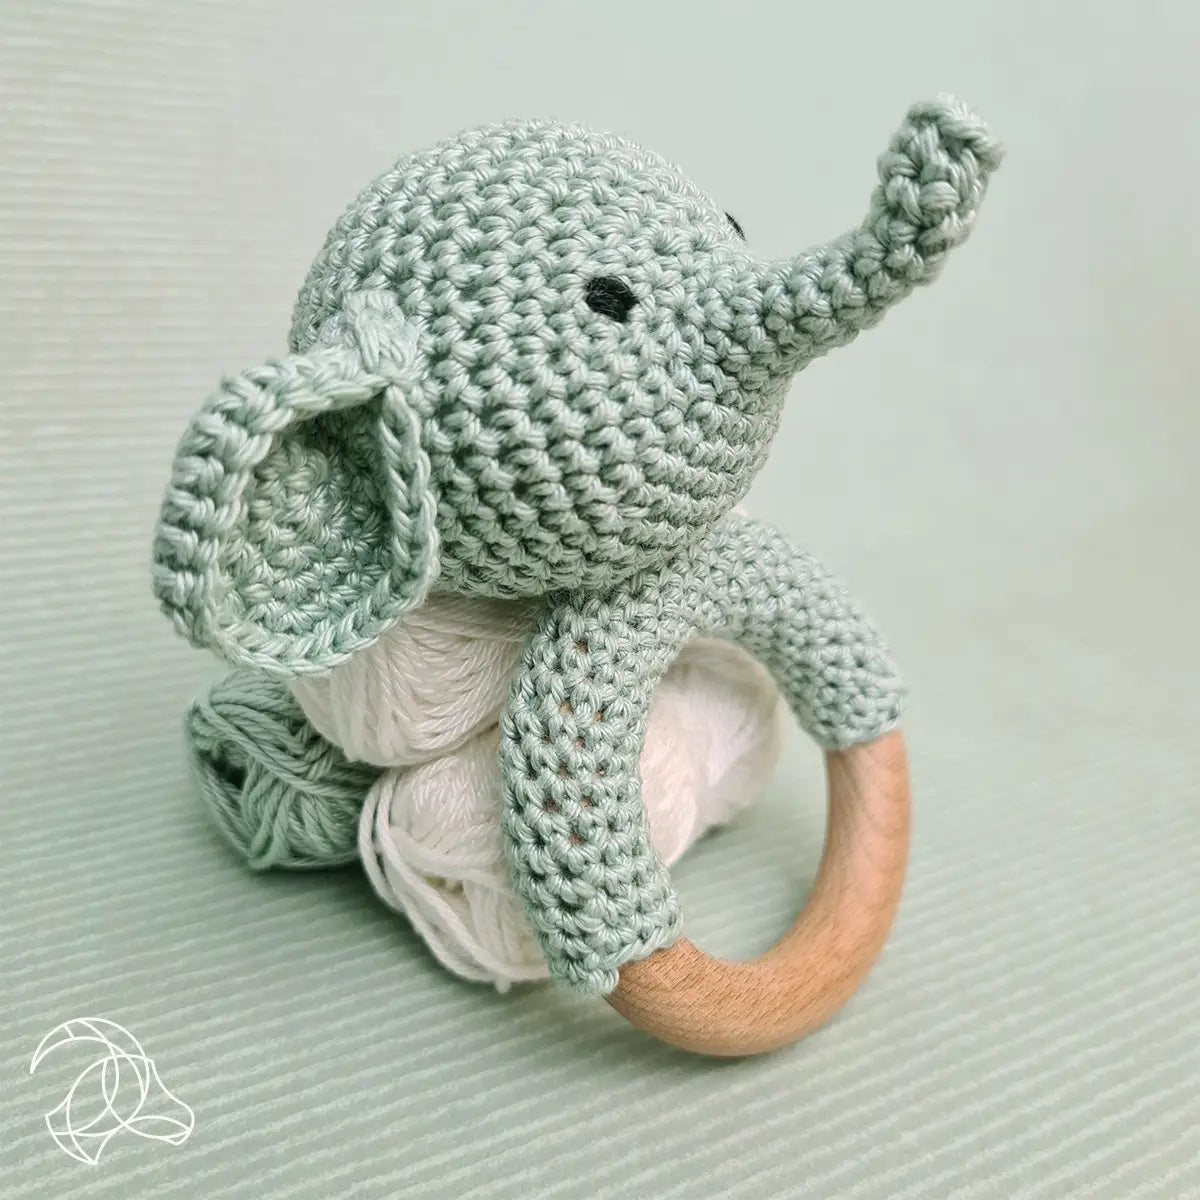 Elephant Crochet Kit 